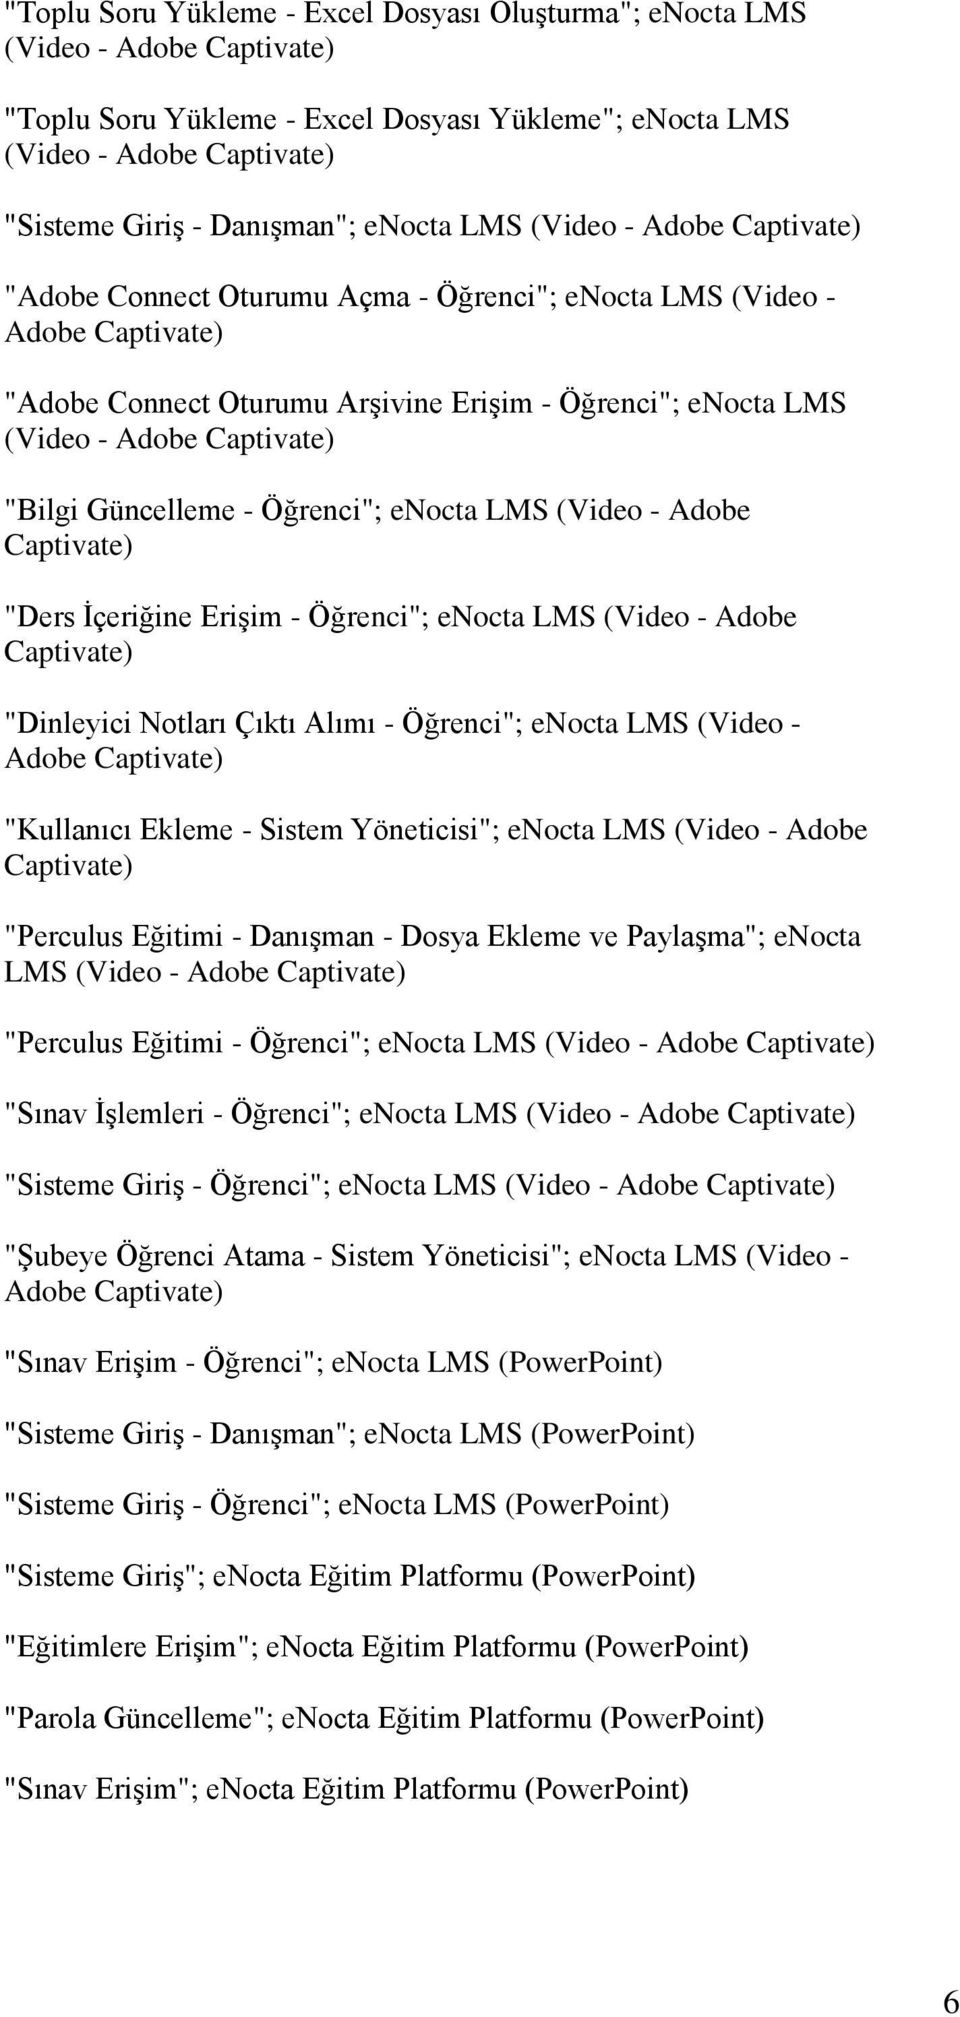 Captivate) "Bilgi Güncelleme - Öğrenci"; enocta LMS (Video - Adobe Captivate) "Ders İçeriğine Erişim - Öğrenci"; enocta LMS (Video - Adobe Captivate) "Dinleyici Notları Çıktı Alımı - Öğrenci"; enocta